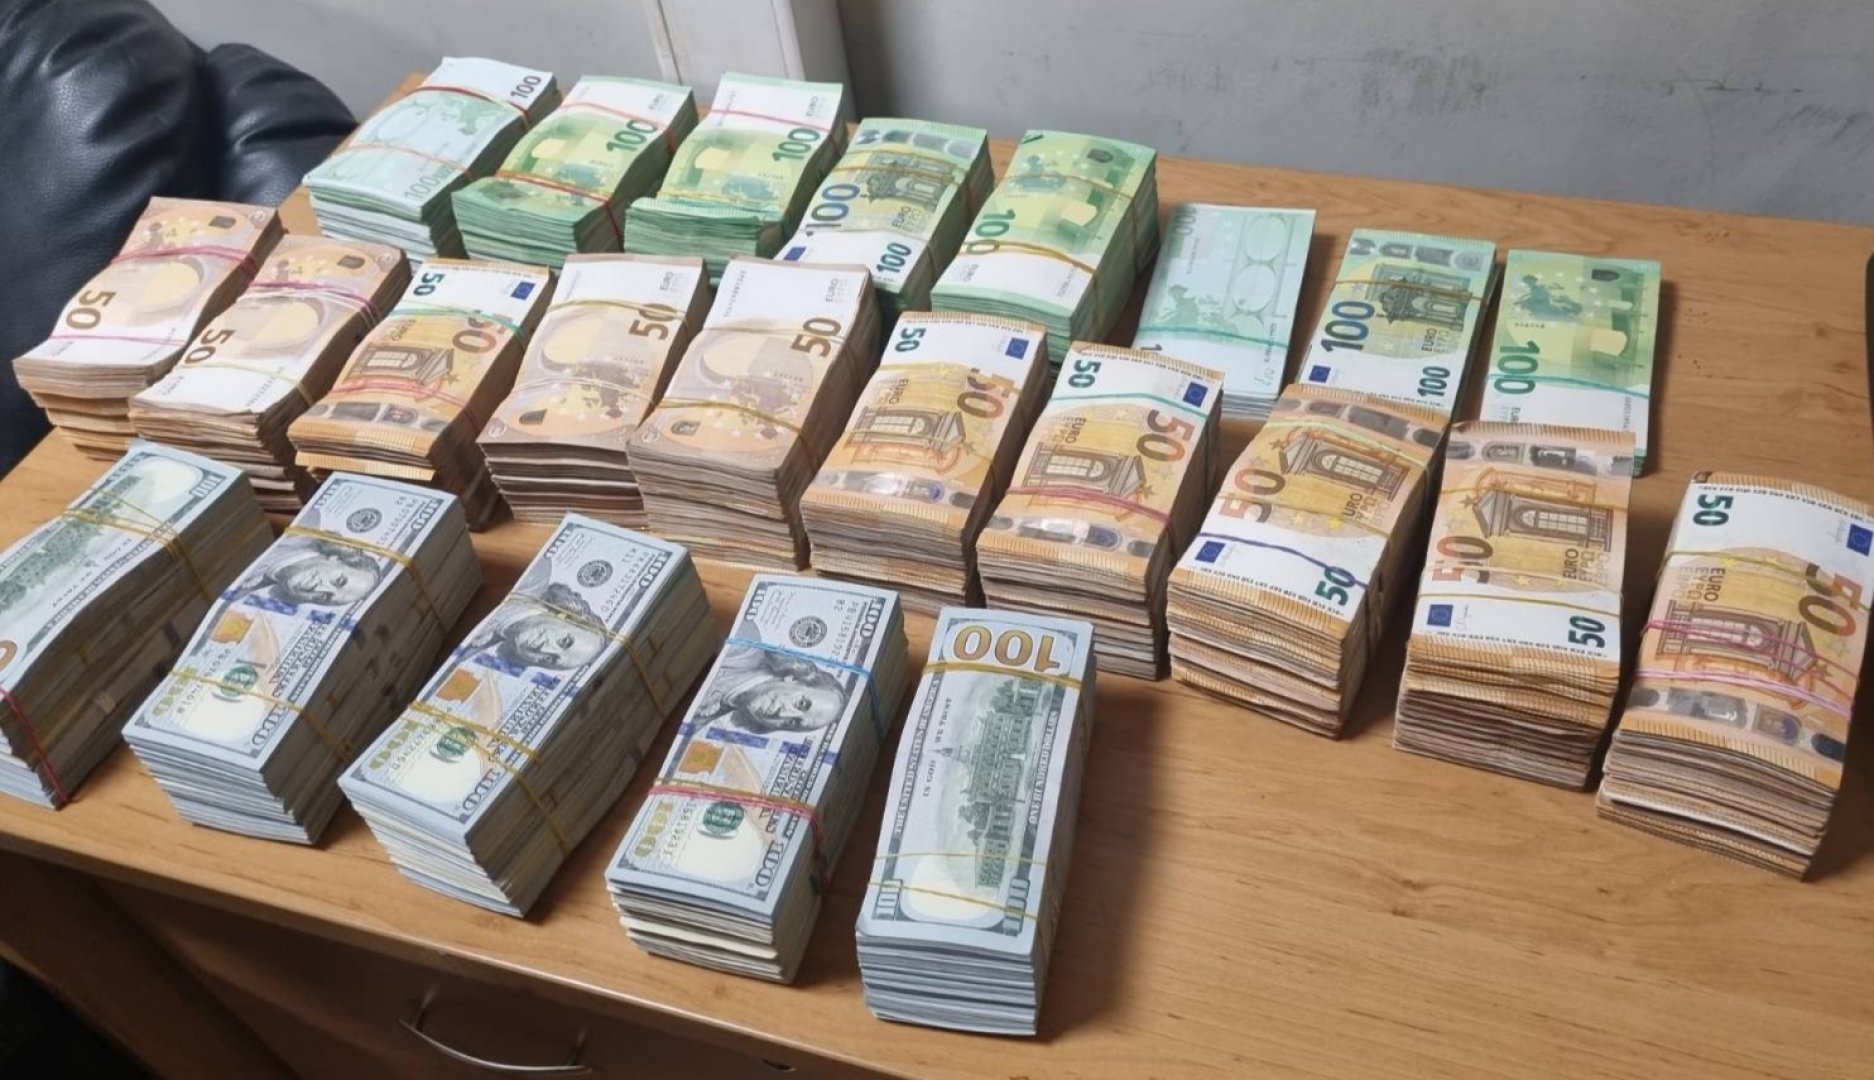 Това е най-голямото задържане на недекларирани парични средства от митническите служители на пункта в Лесово за период от повече от 10 години насам. Снимка МП Лесово